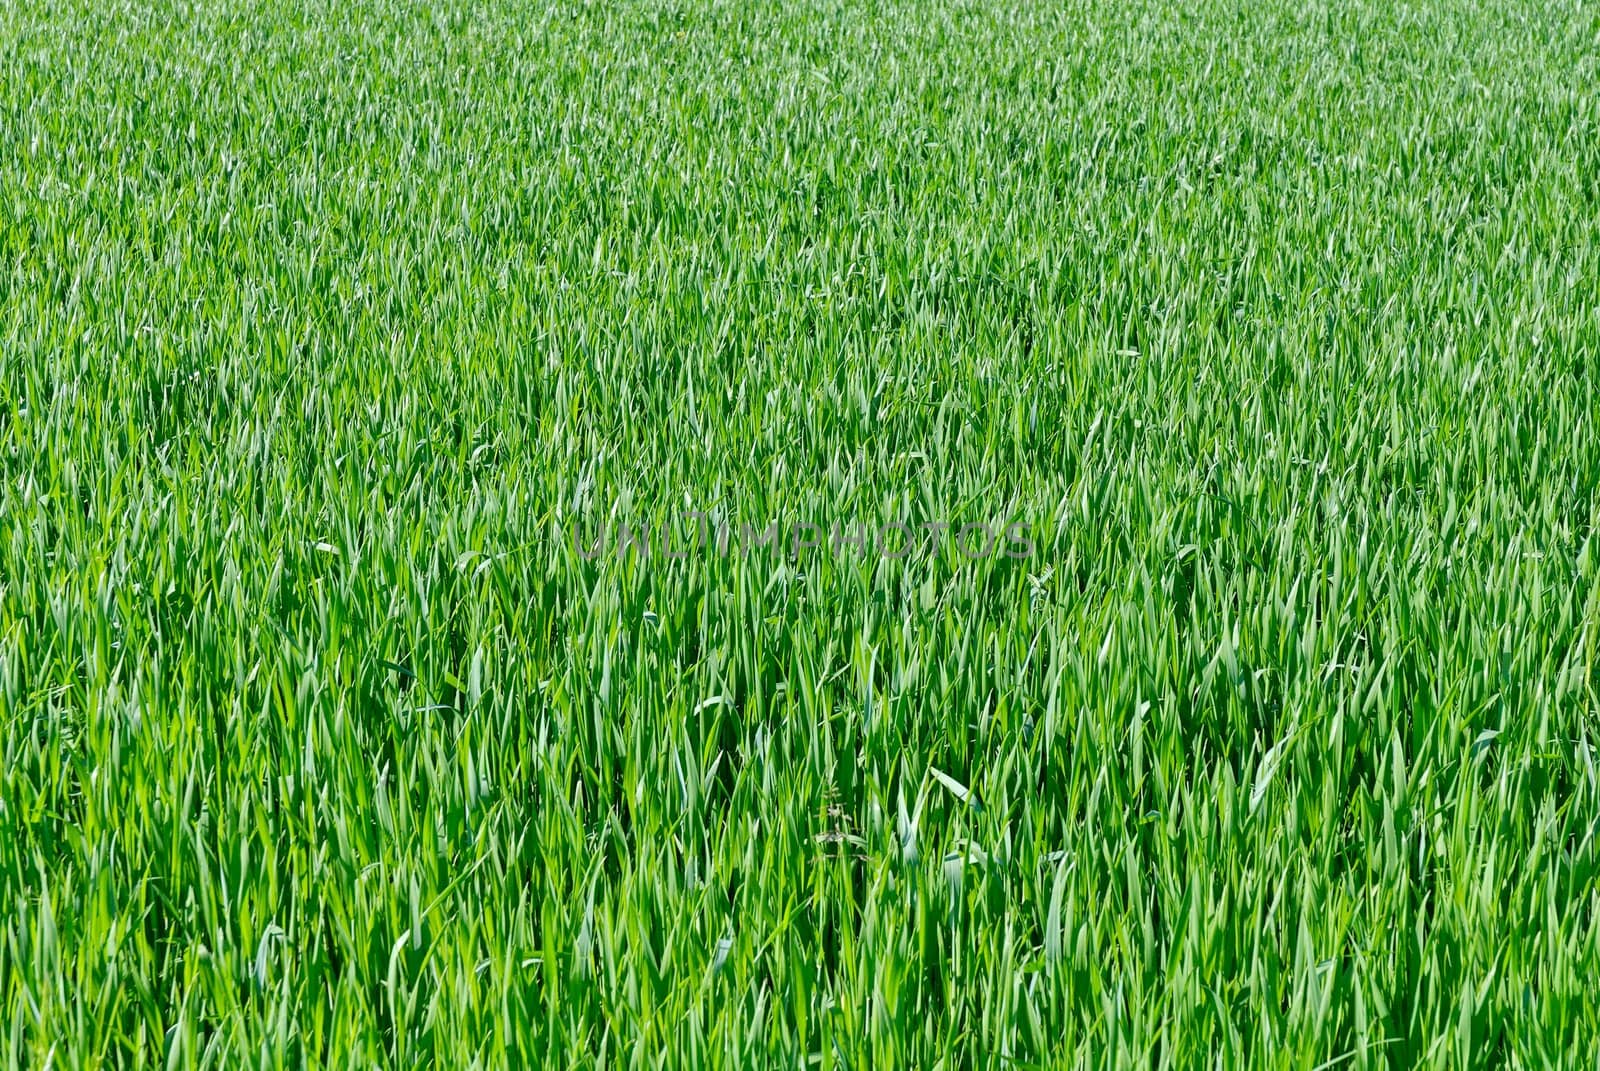 Wheat seedling field by Laborer